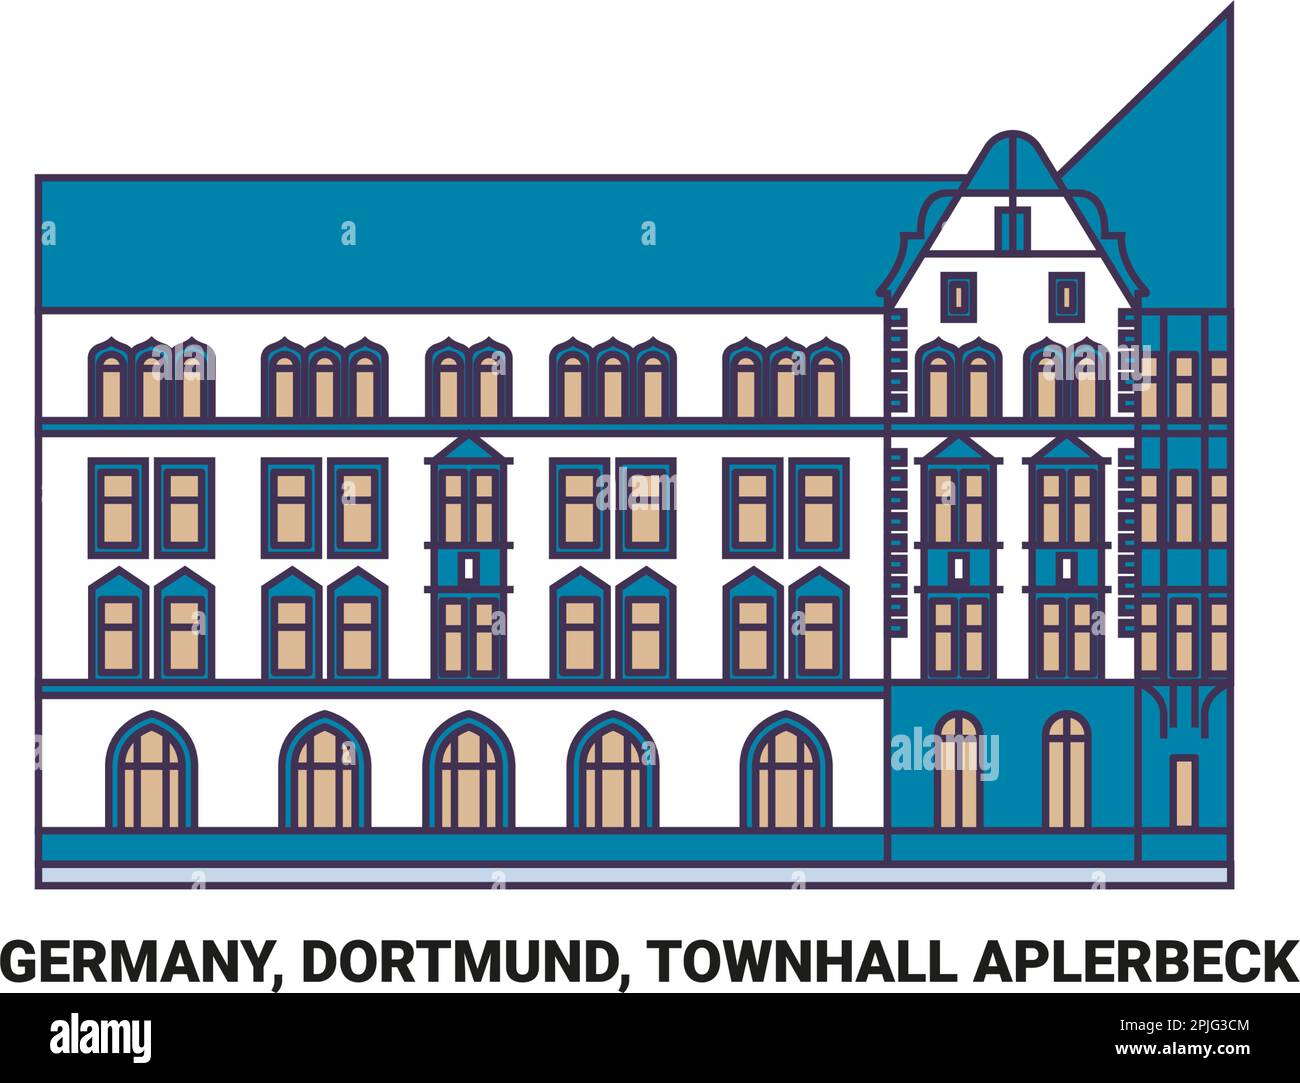 Deutschland, Dortmund, Townhall Aplerbeck Reise-Wahrzeichen-Vektordarstellung Stock Vektor